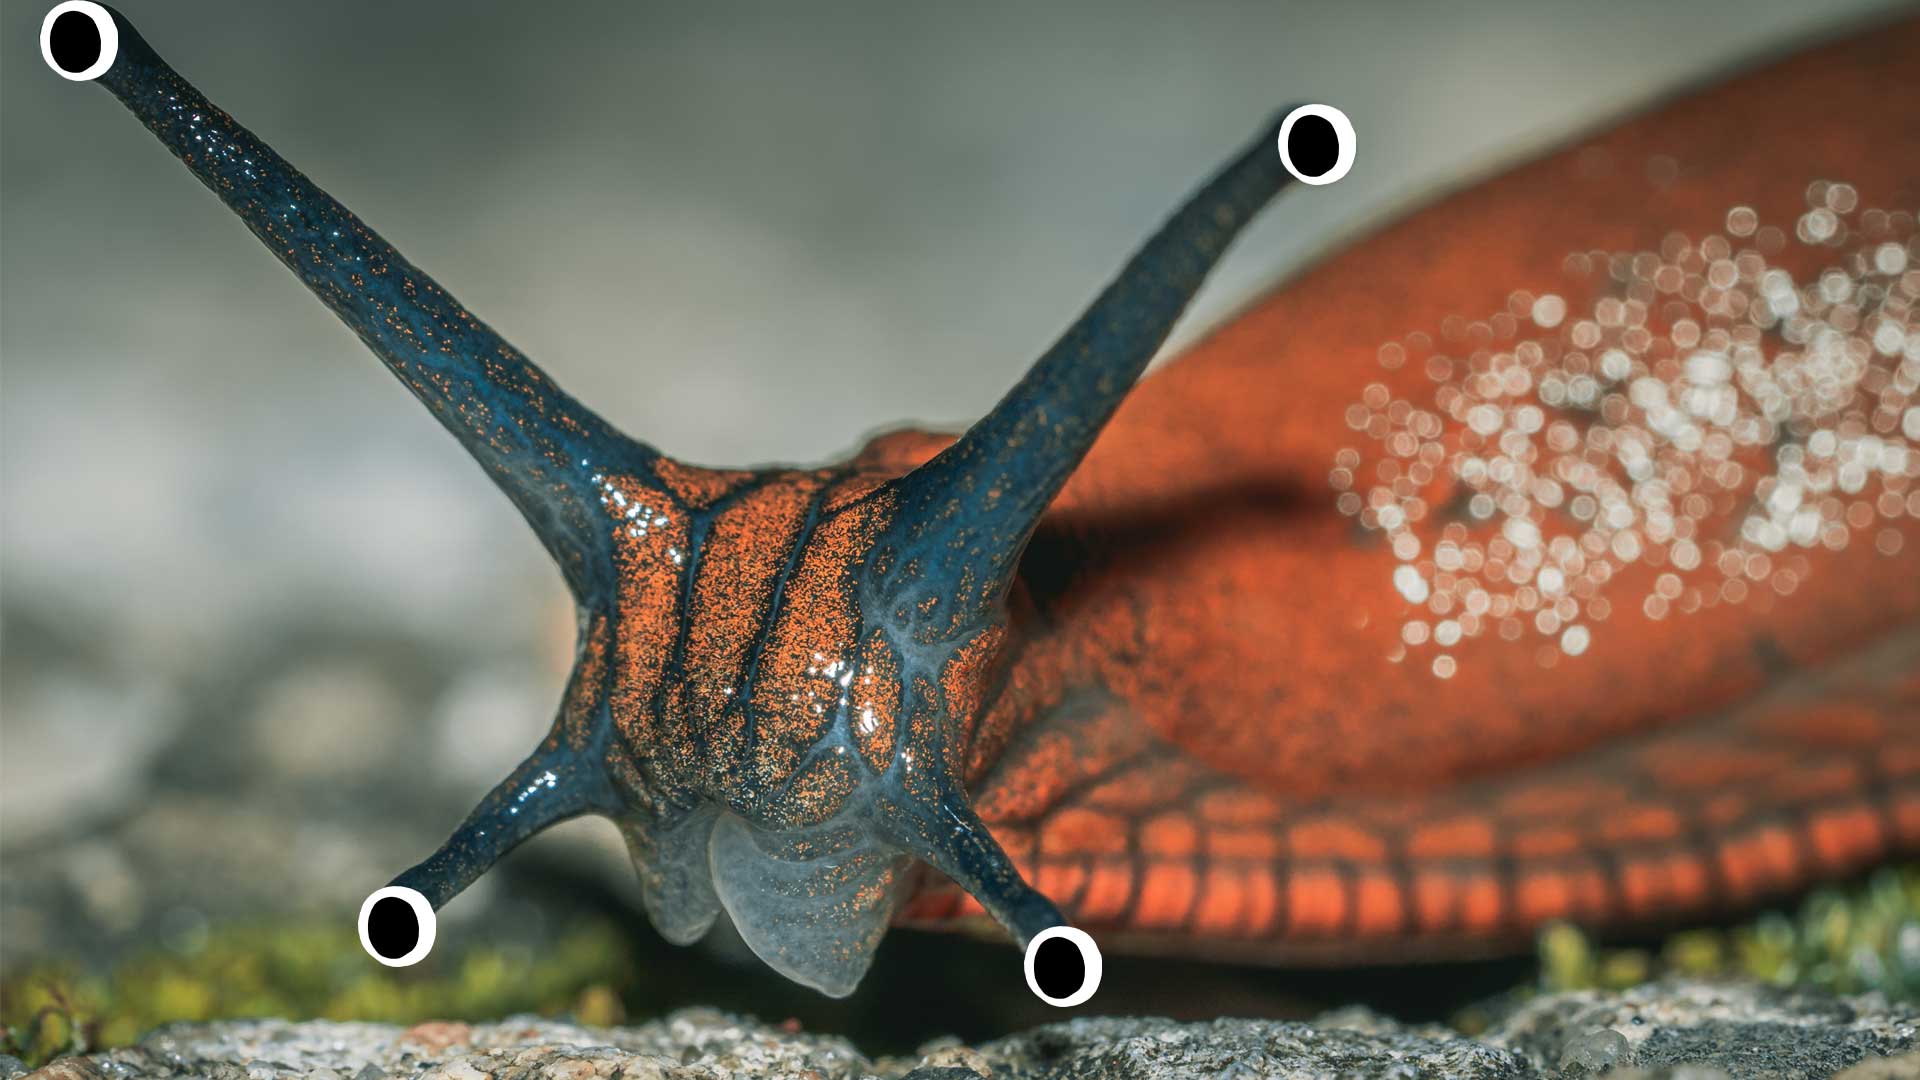 A slug with four noses